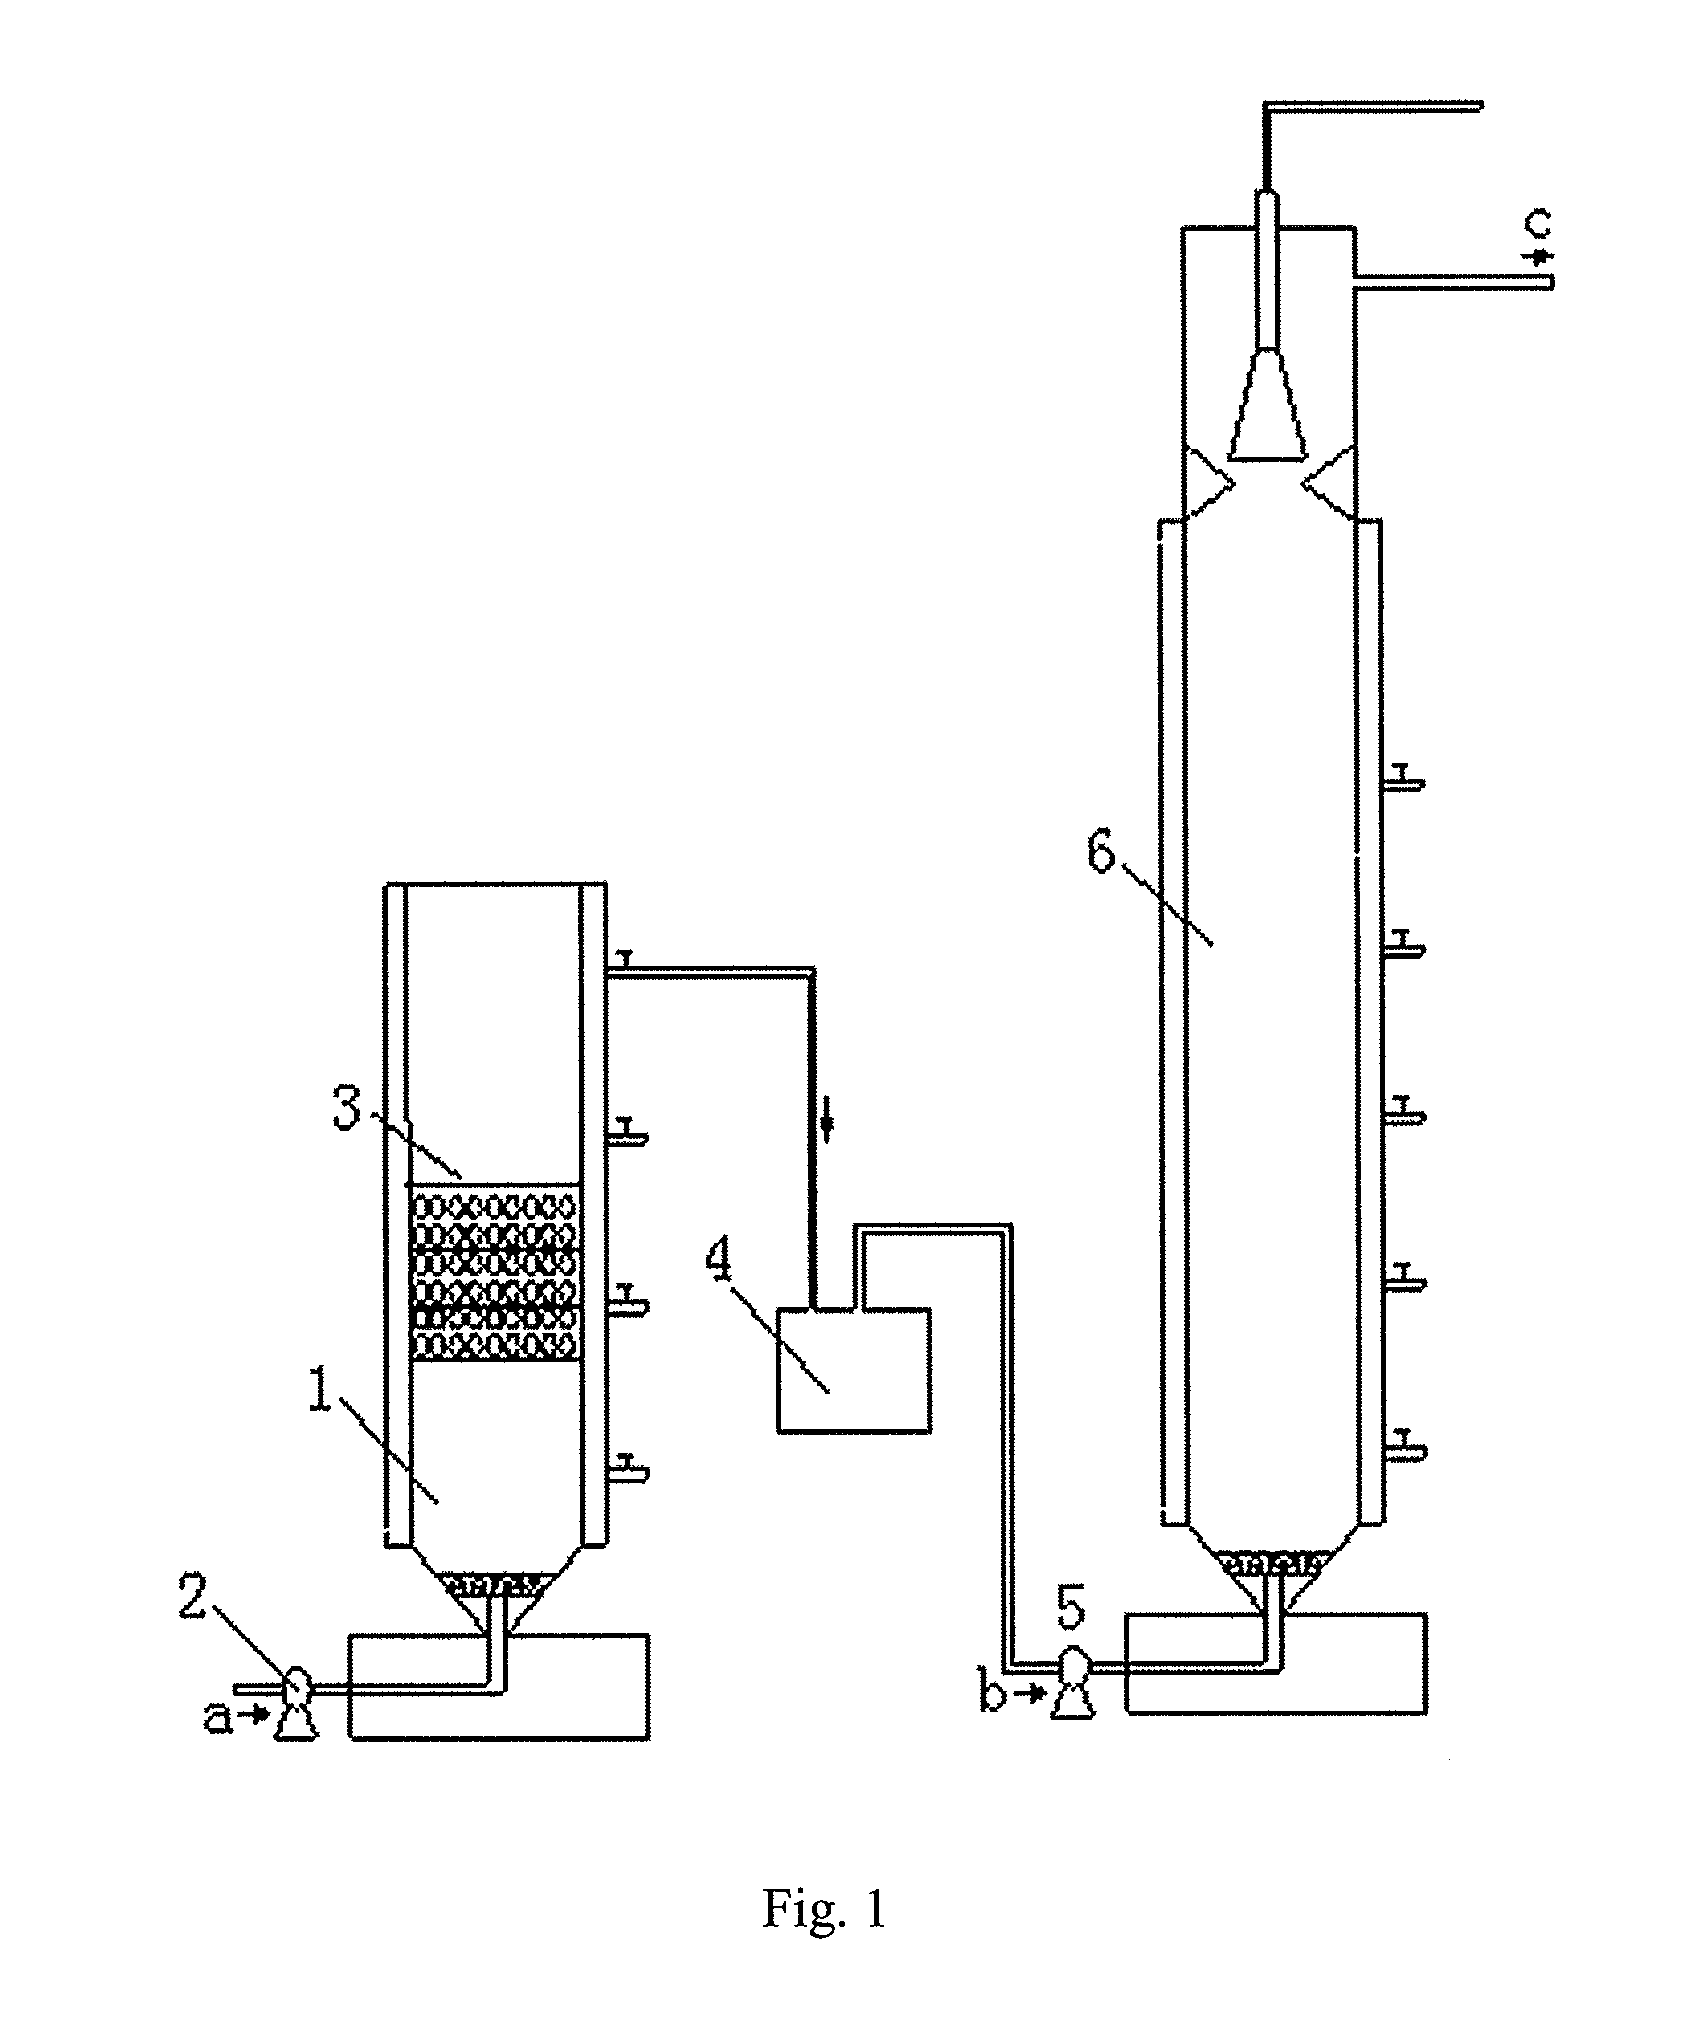 Zero-valent iron two-phase anaerobic reactor